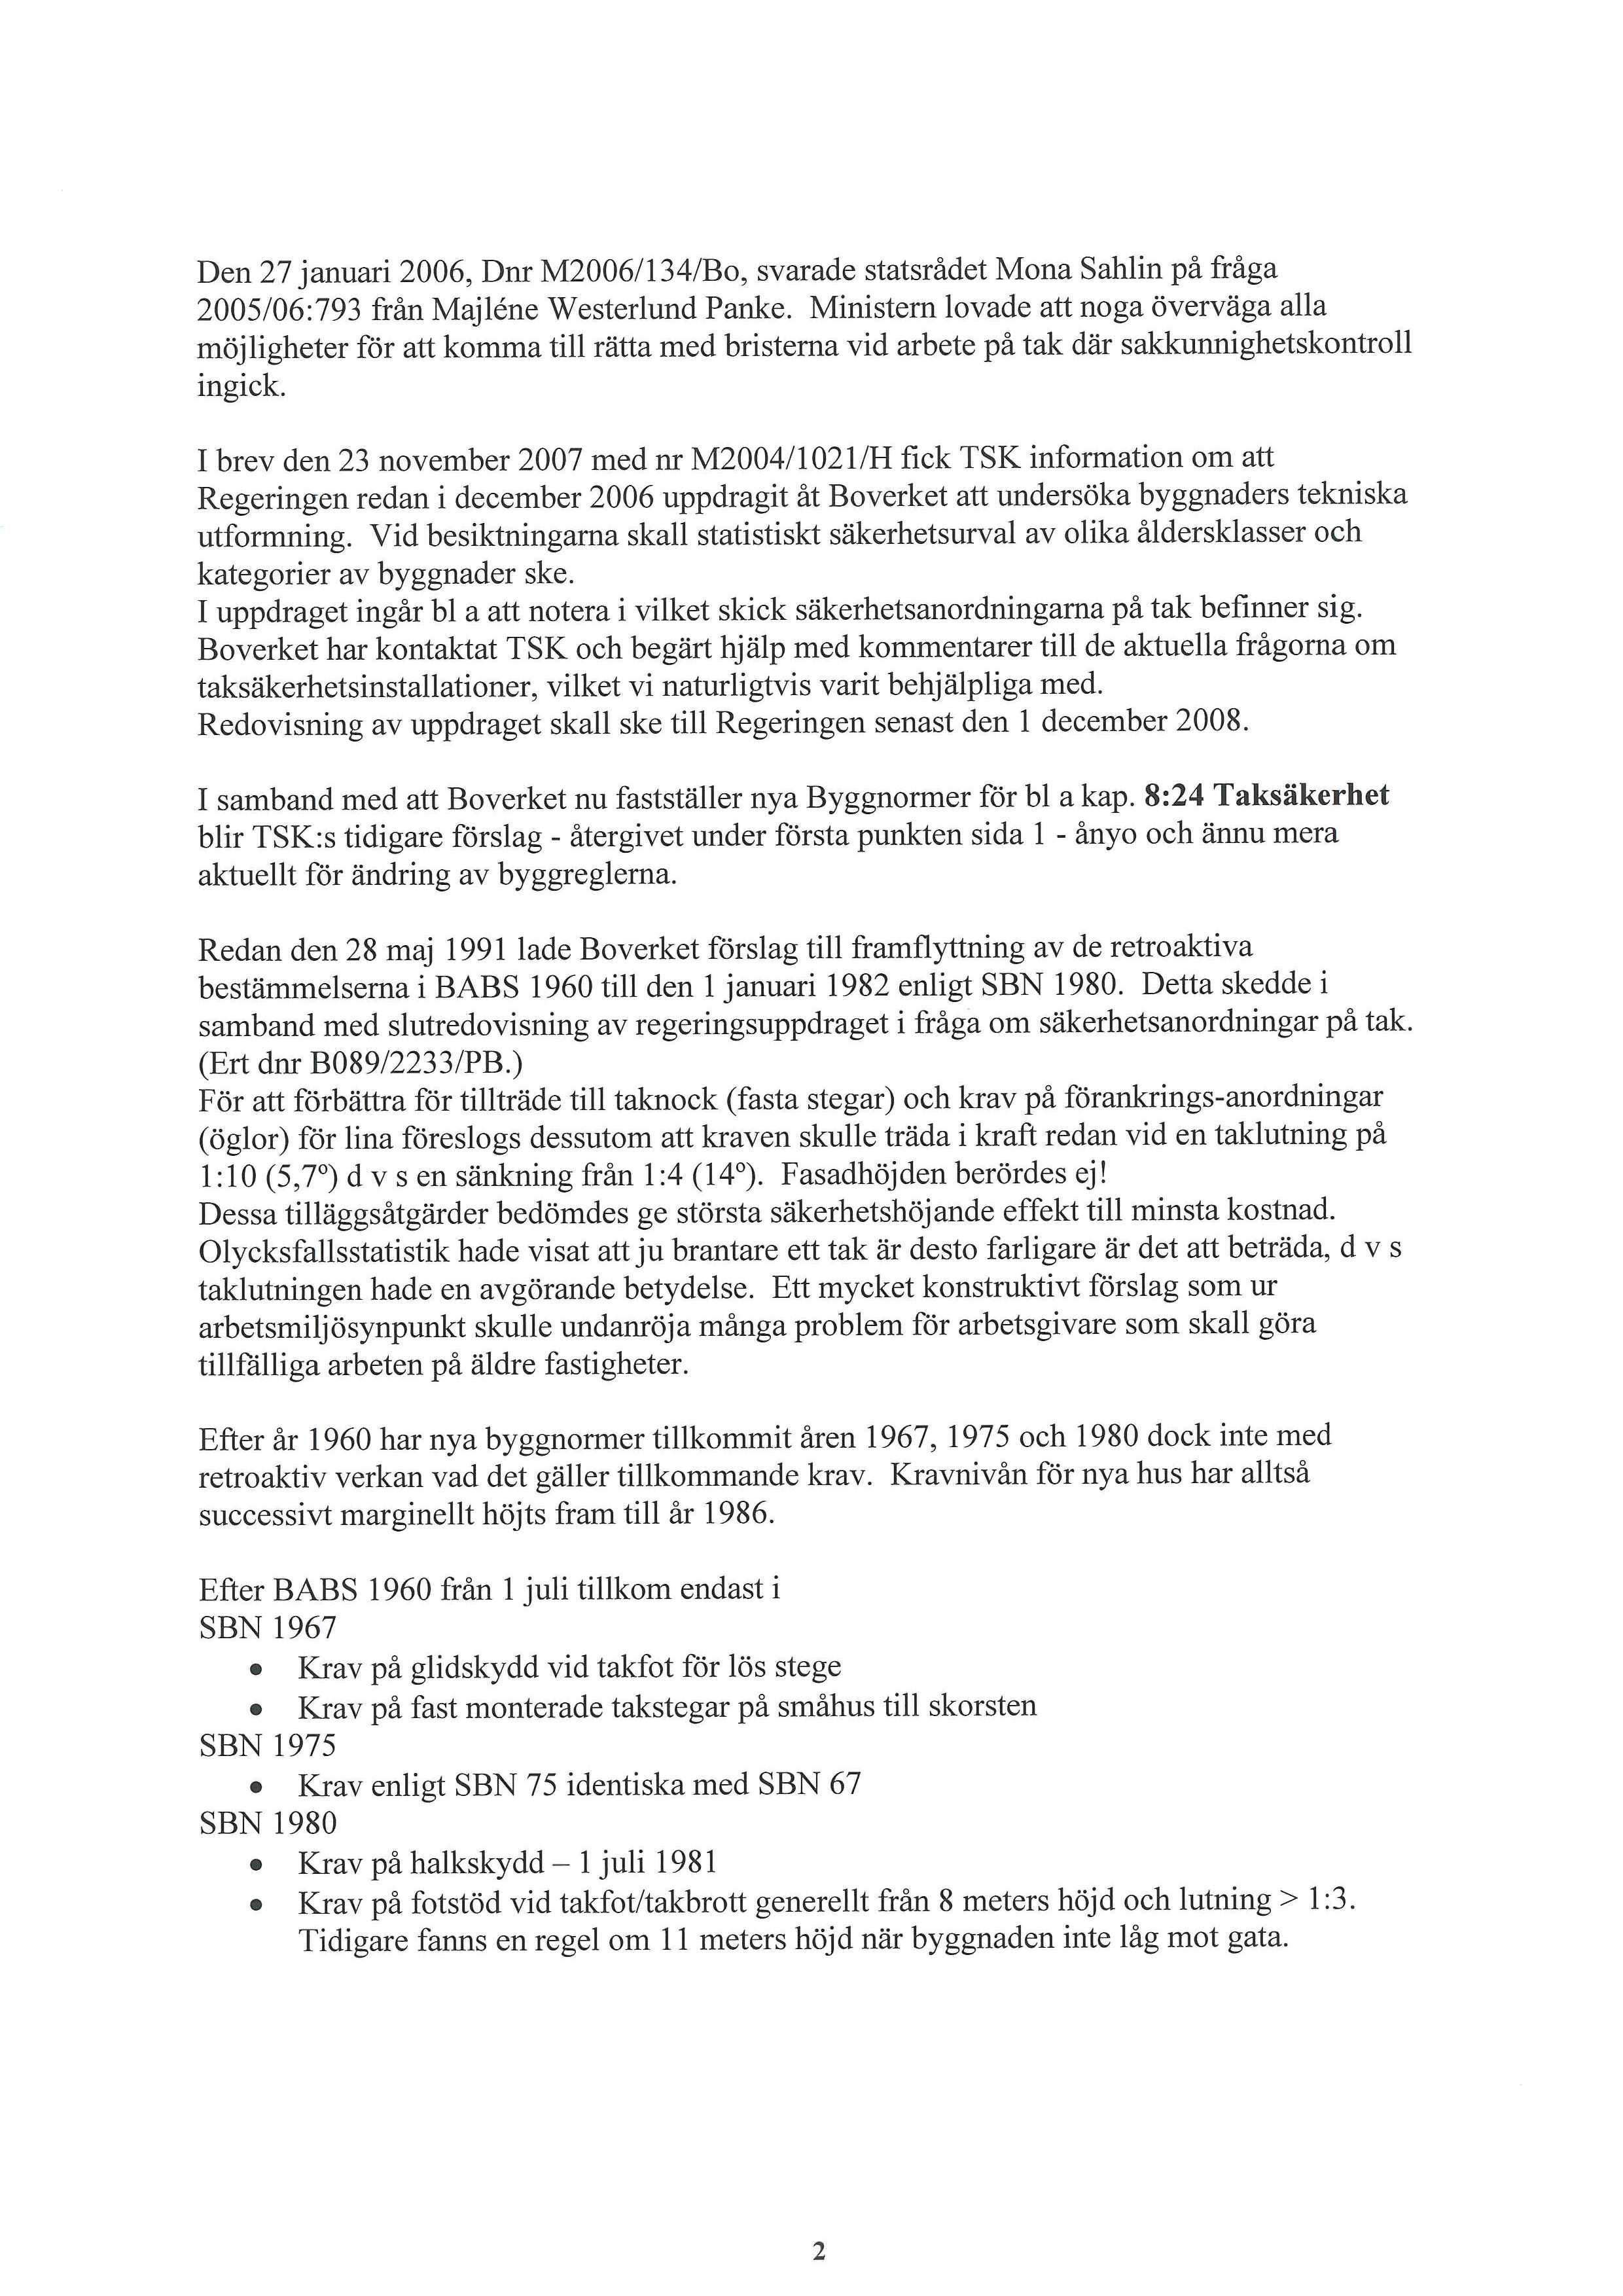 Den 27 januari 2006, Dnr M2006/134/Bo, svarade statsrådet Mona Sahlin på fråga 2005/06:793 från Majléne Westerlund Panke.